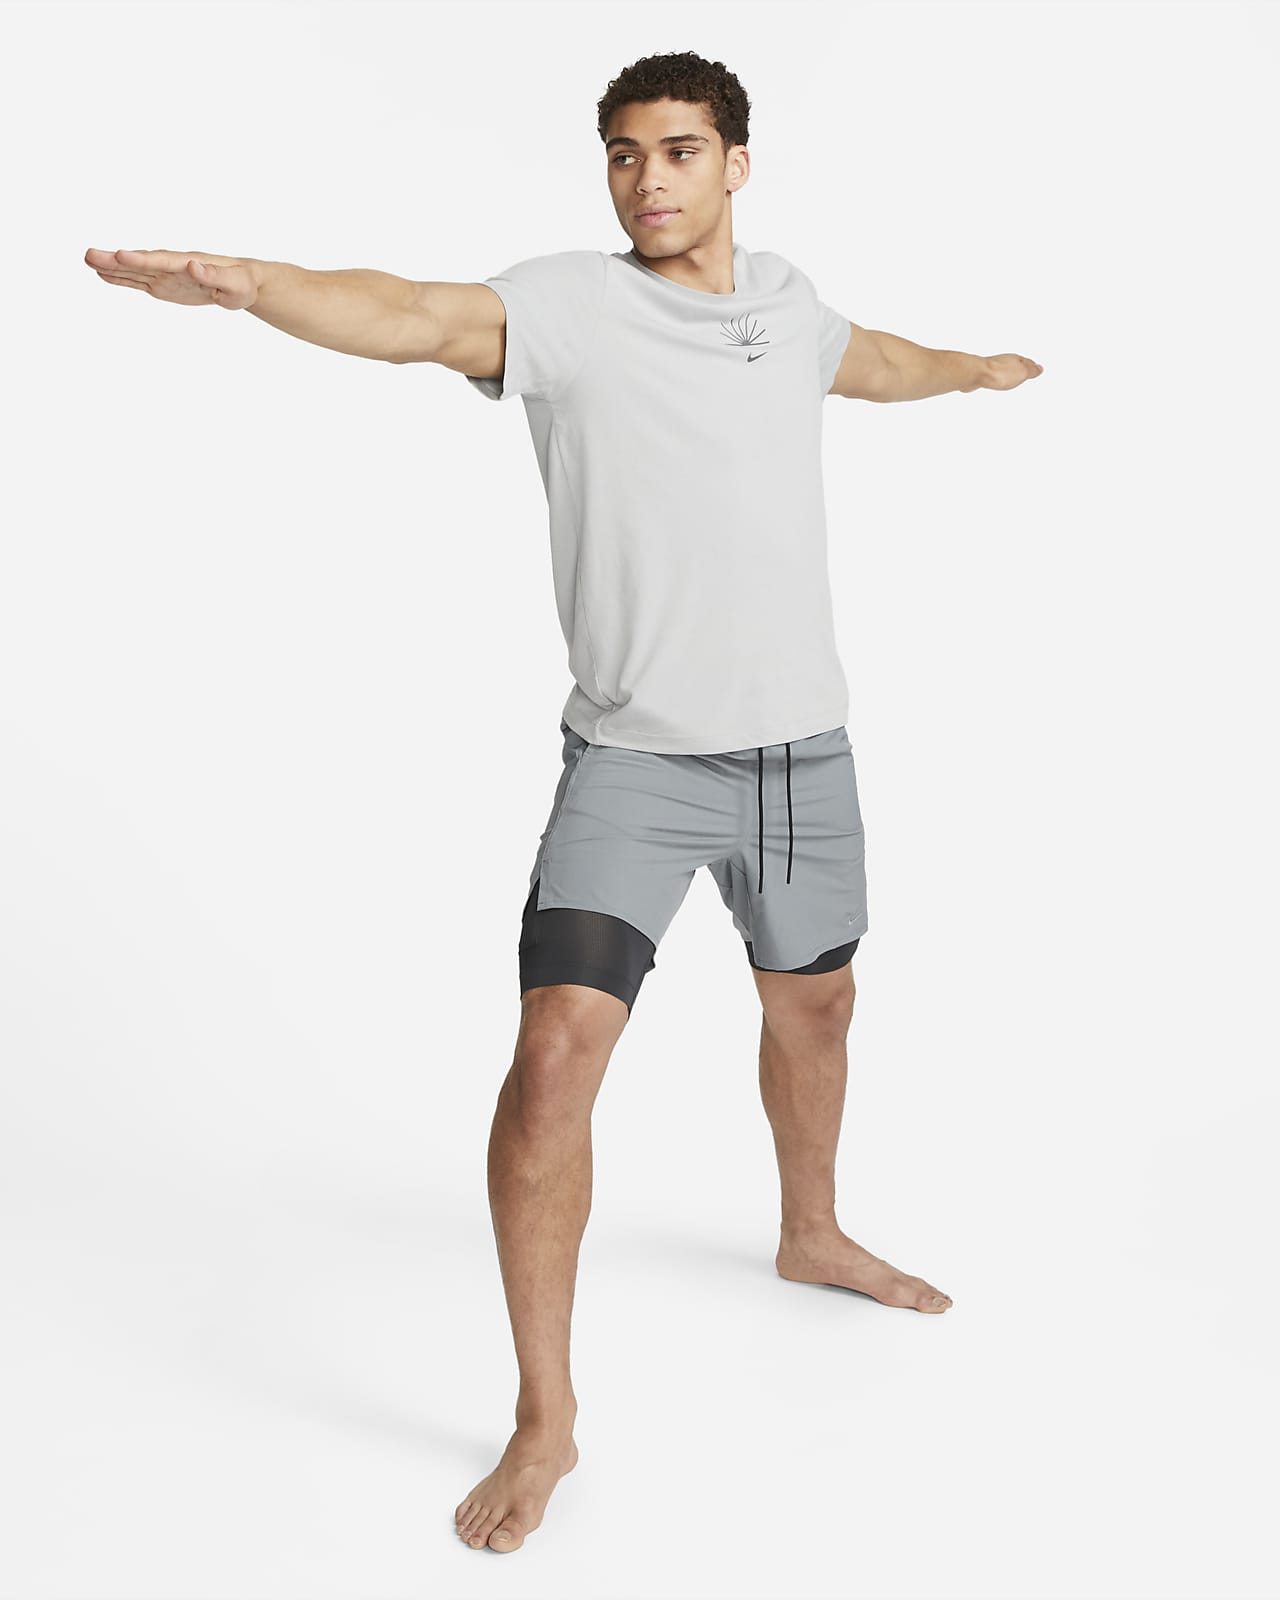 Ofodrade mångsidiga 2-i-1-shorts Nike Unlimited Dri-FIT 18 cm för män